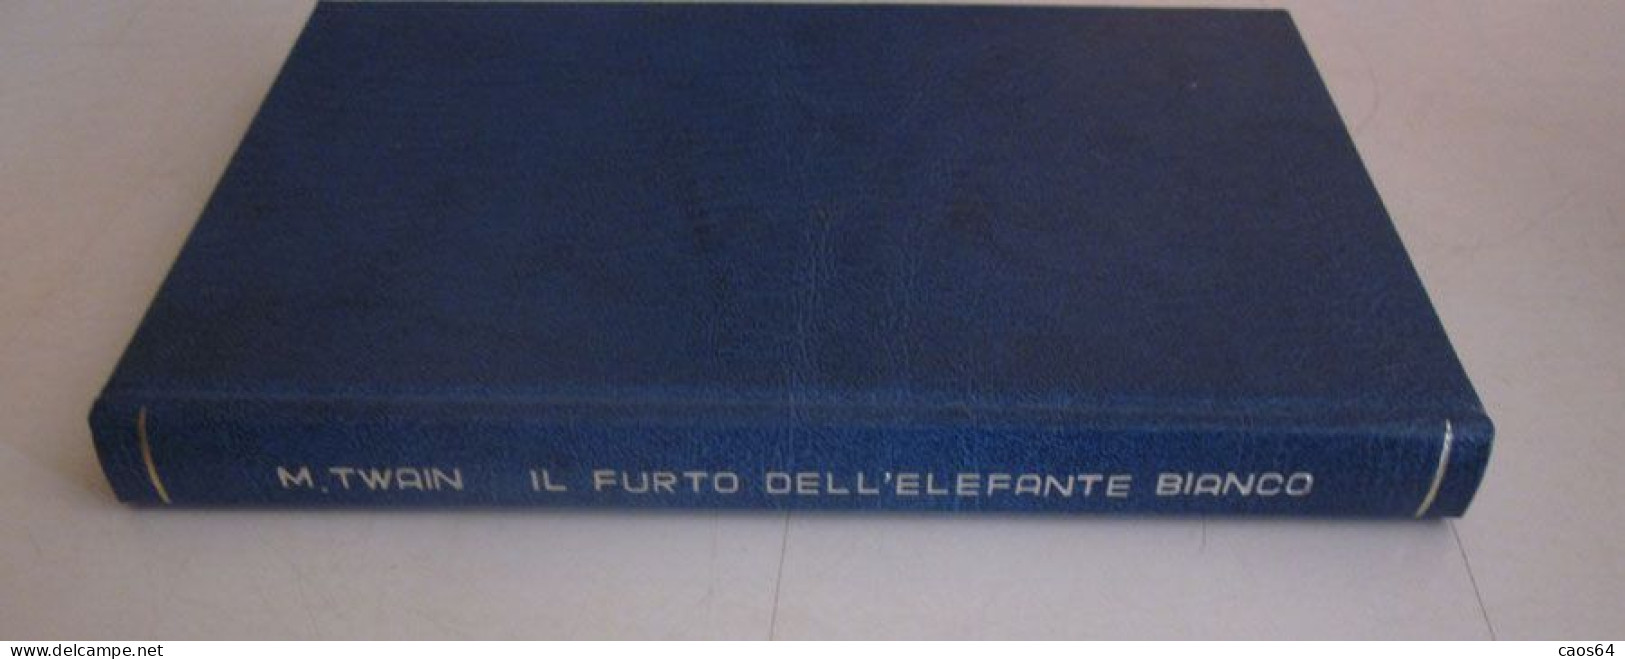 Il Furto Dell'elefante Bianco Mark Twain Rizzoli BUR 1952 - Classic